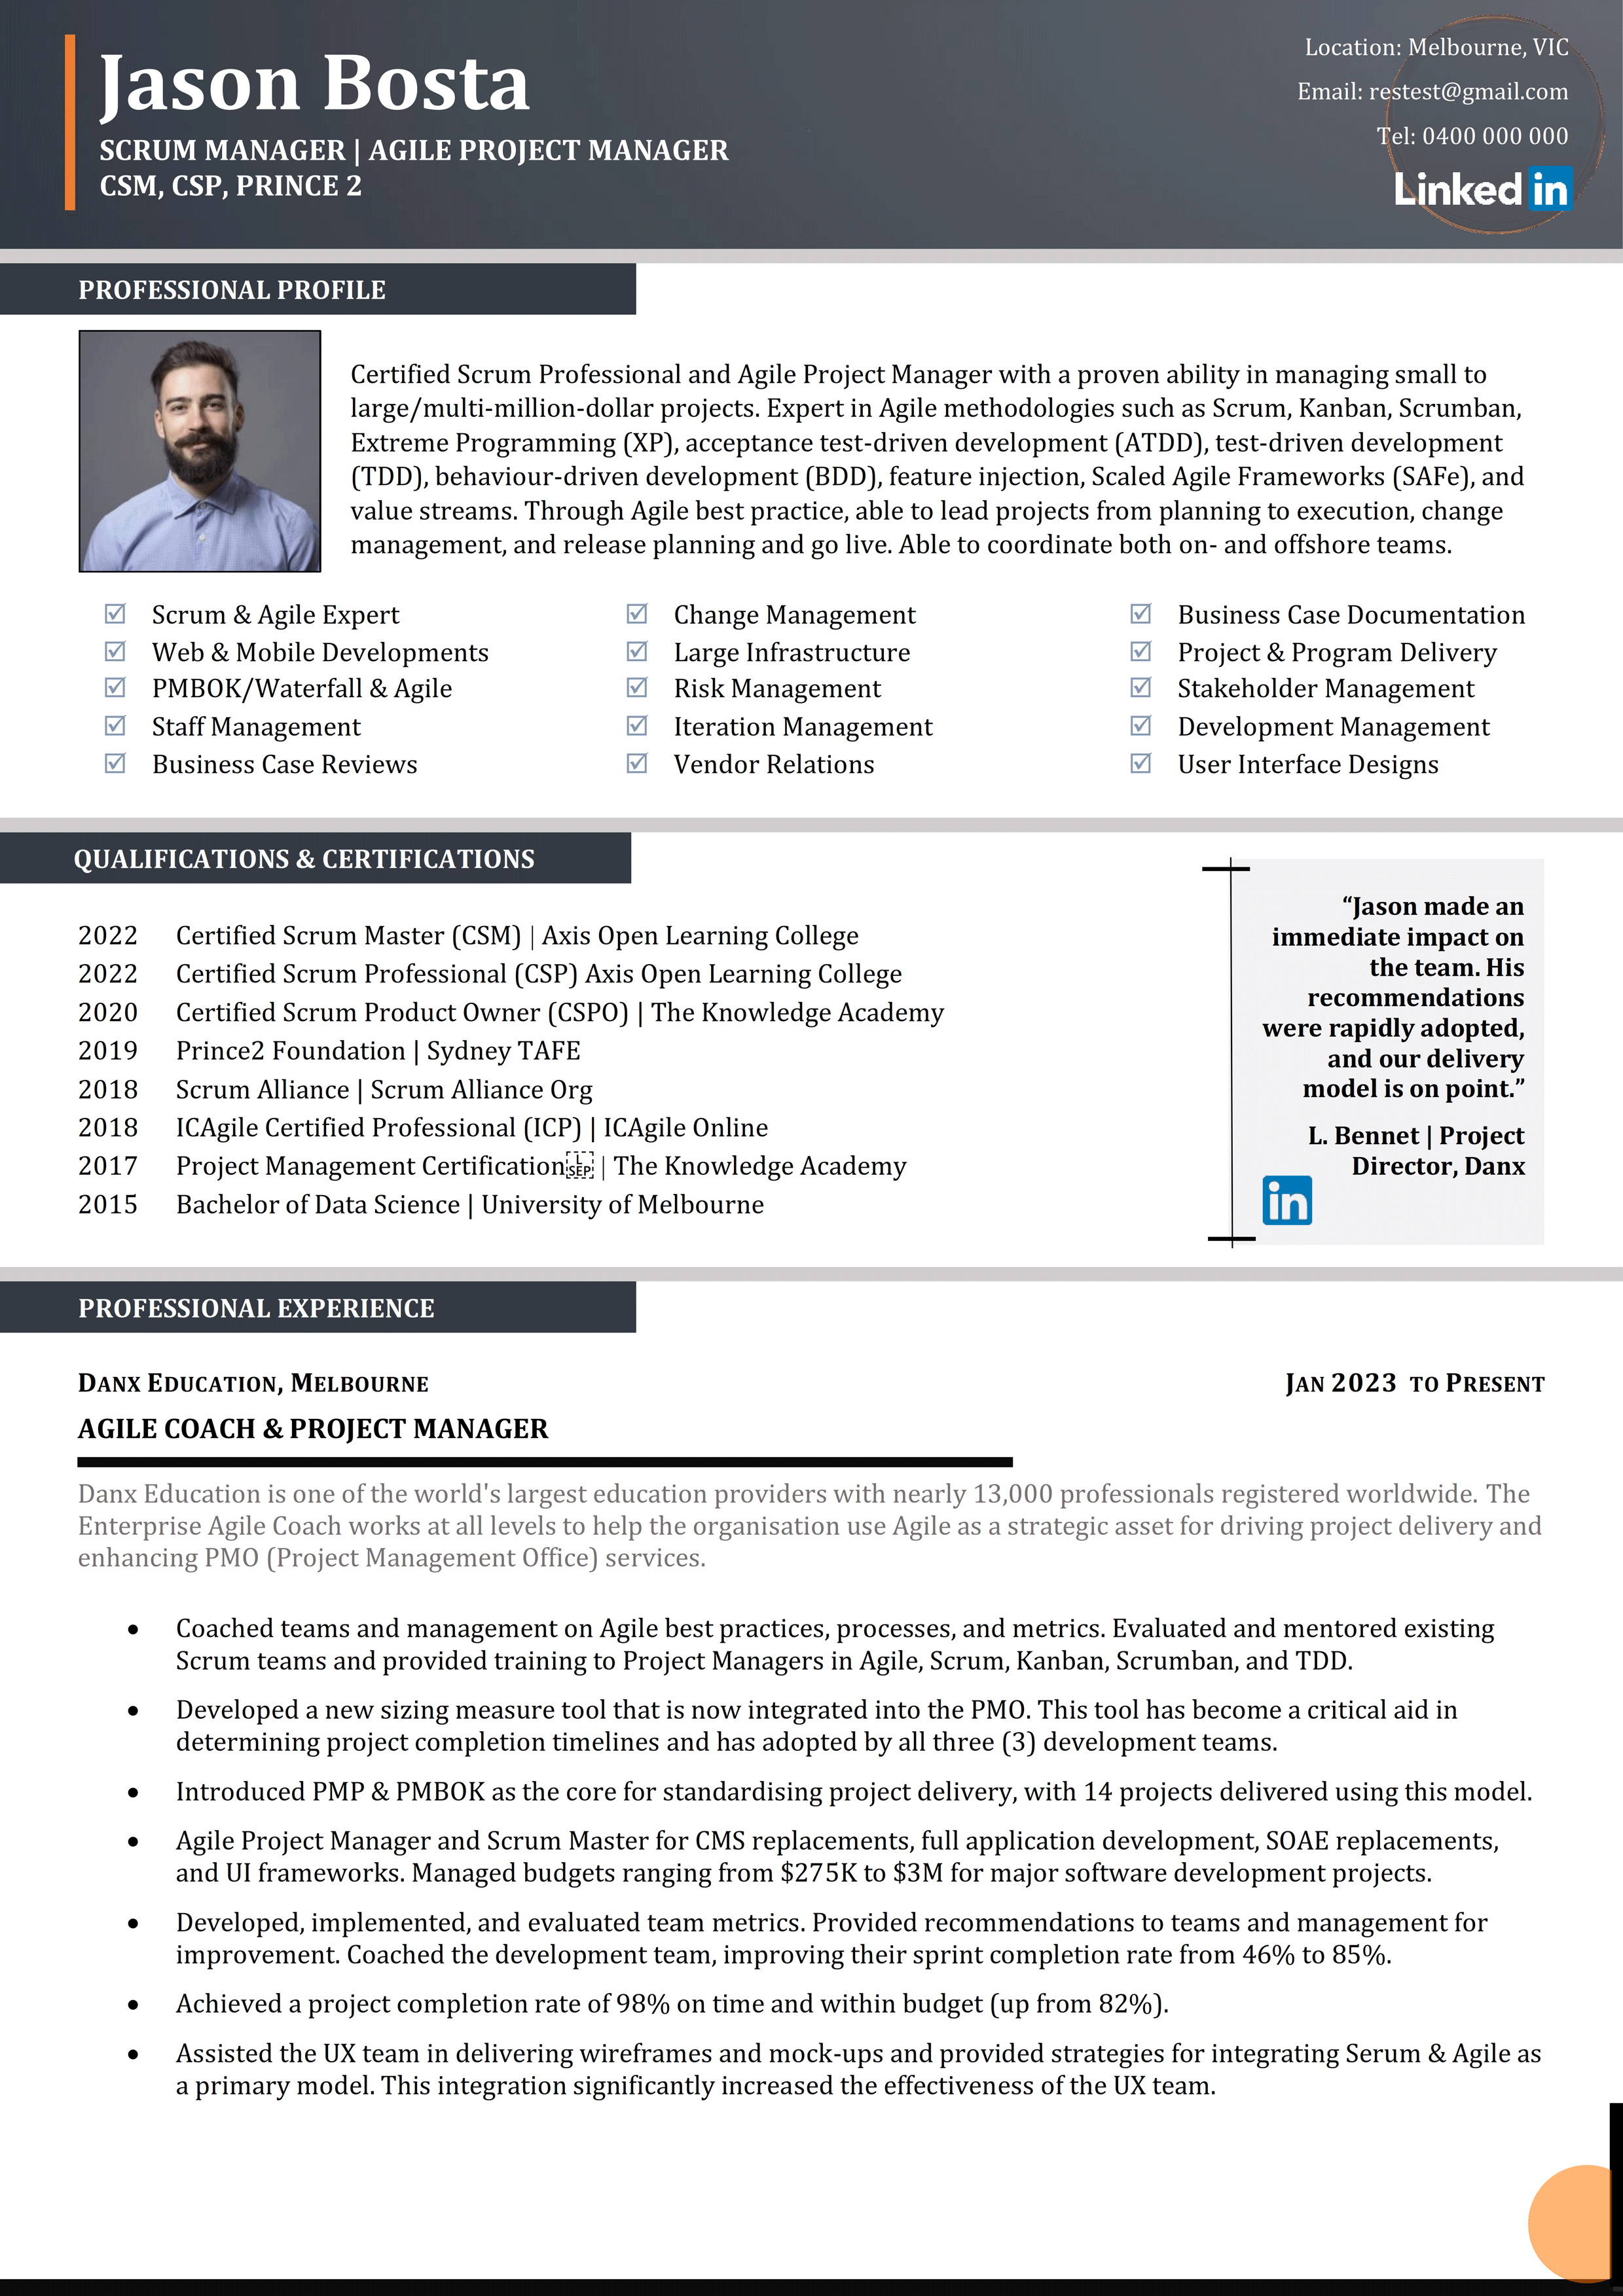 Scrum Master CV Resume - Jason Bosta